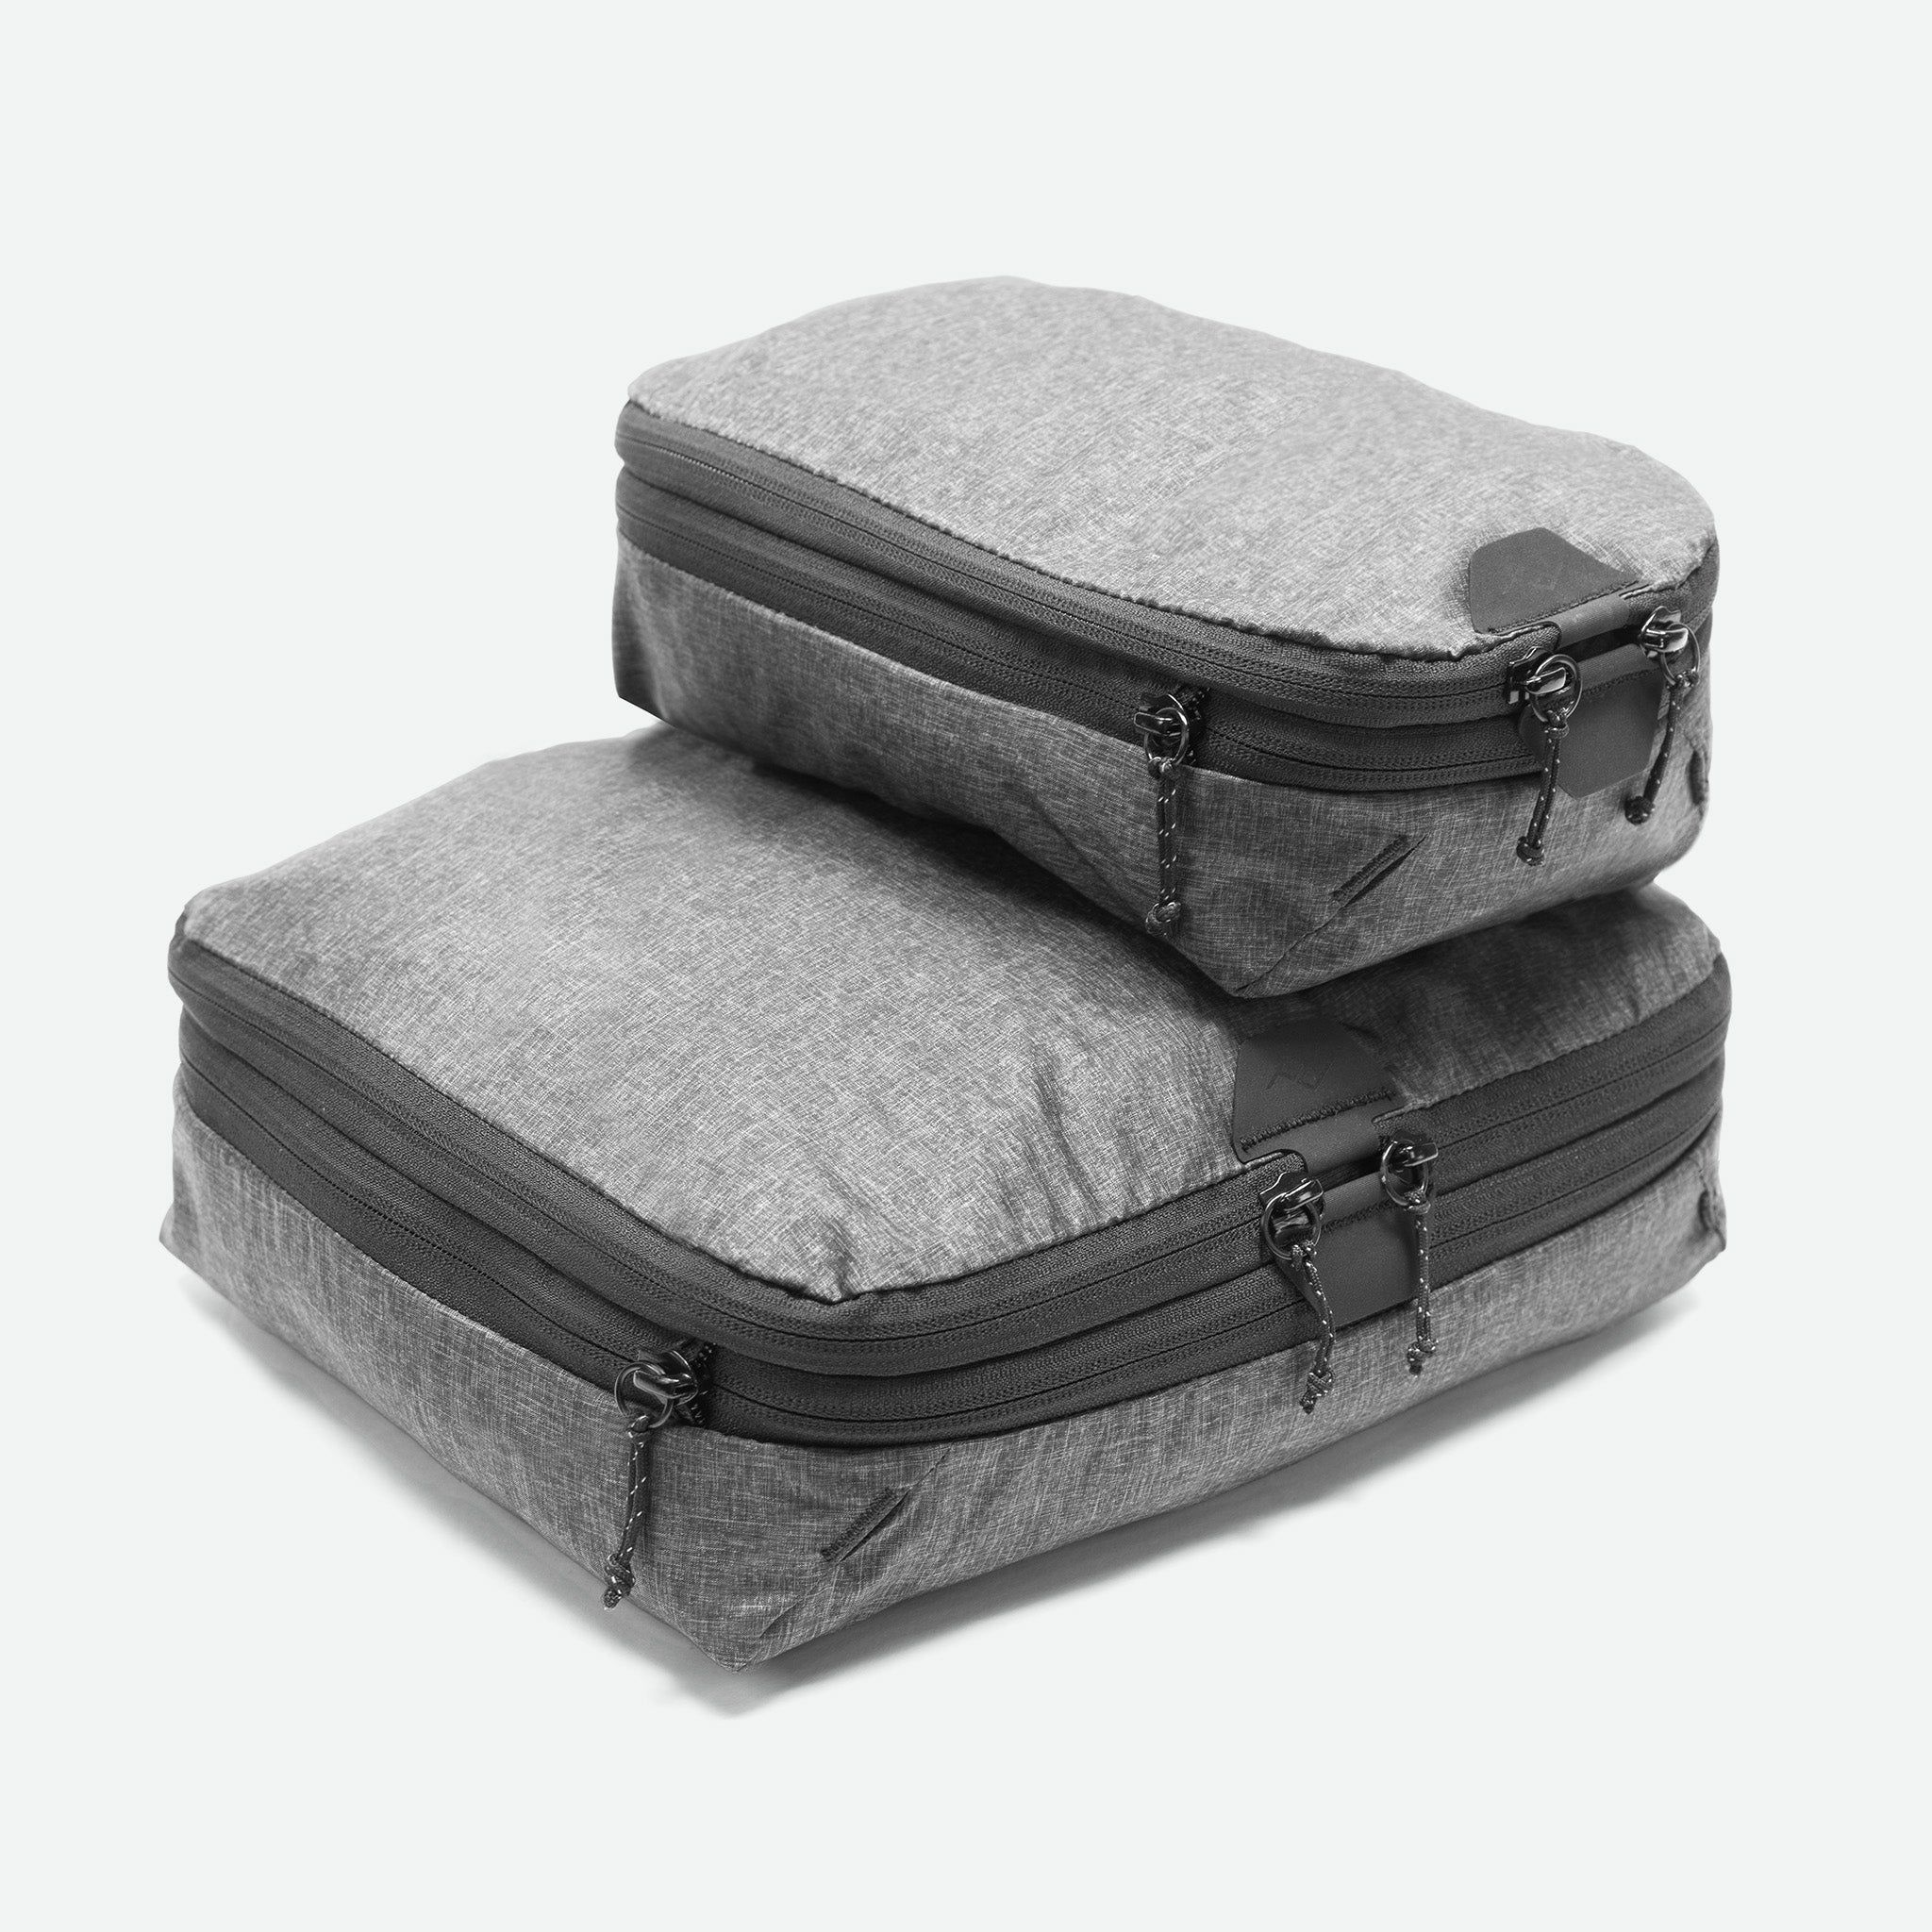 Peak Design Packing Cube Medium Charcoal | Packing cube (også kendt som rejse cube og pakke cube) til organisering af bagagen